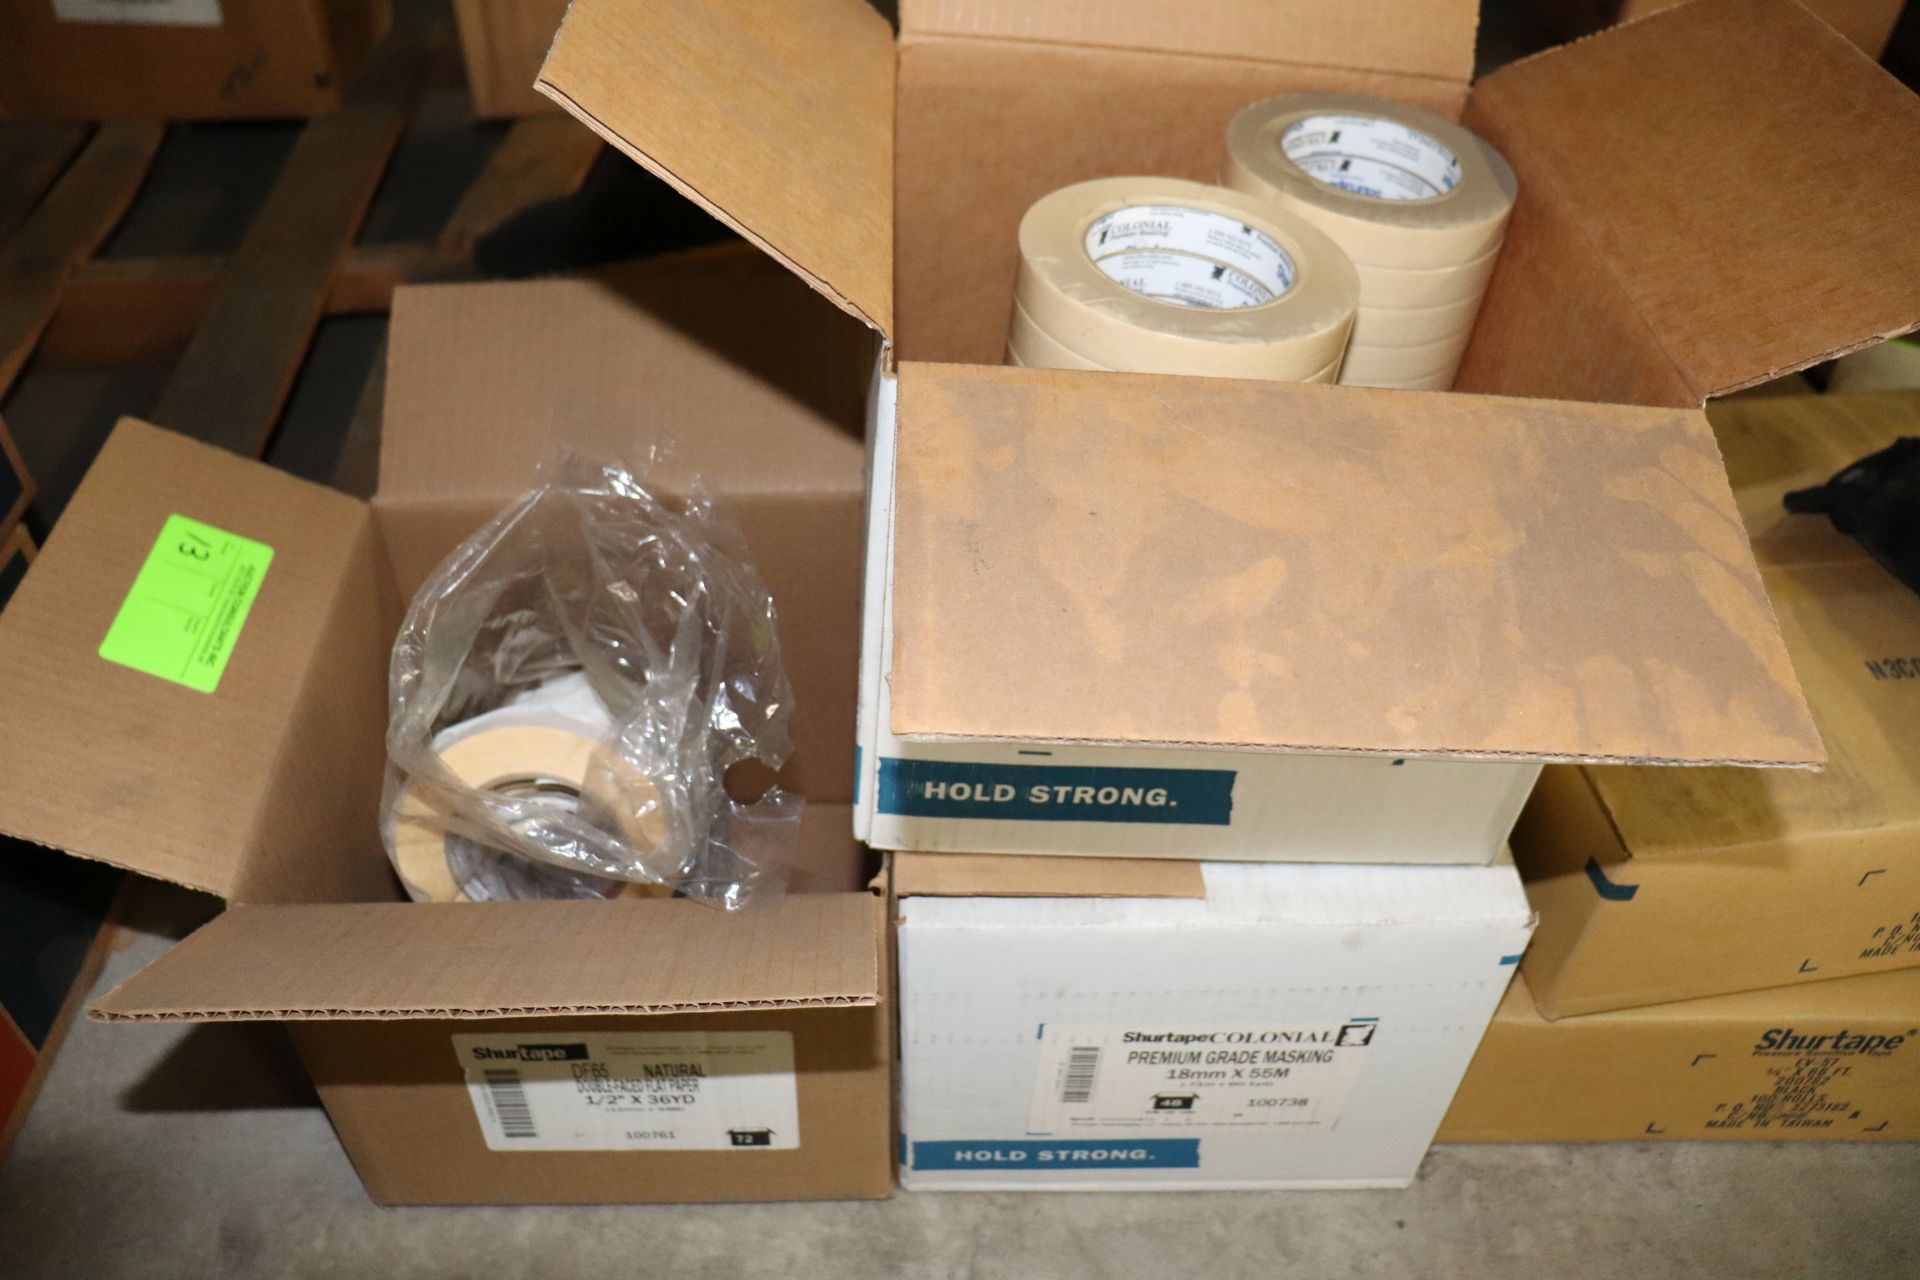 Two full boxes of Shurtape premium grade masking tape, 18mm x 55m